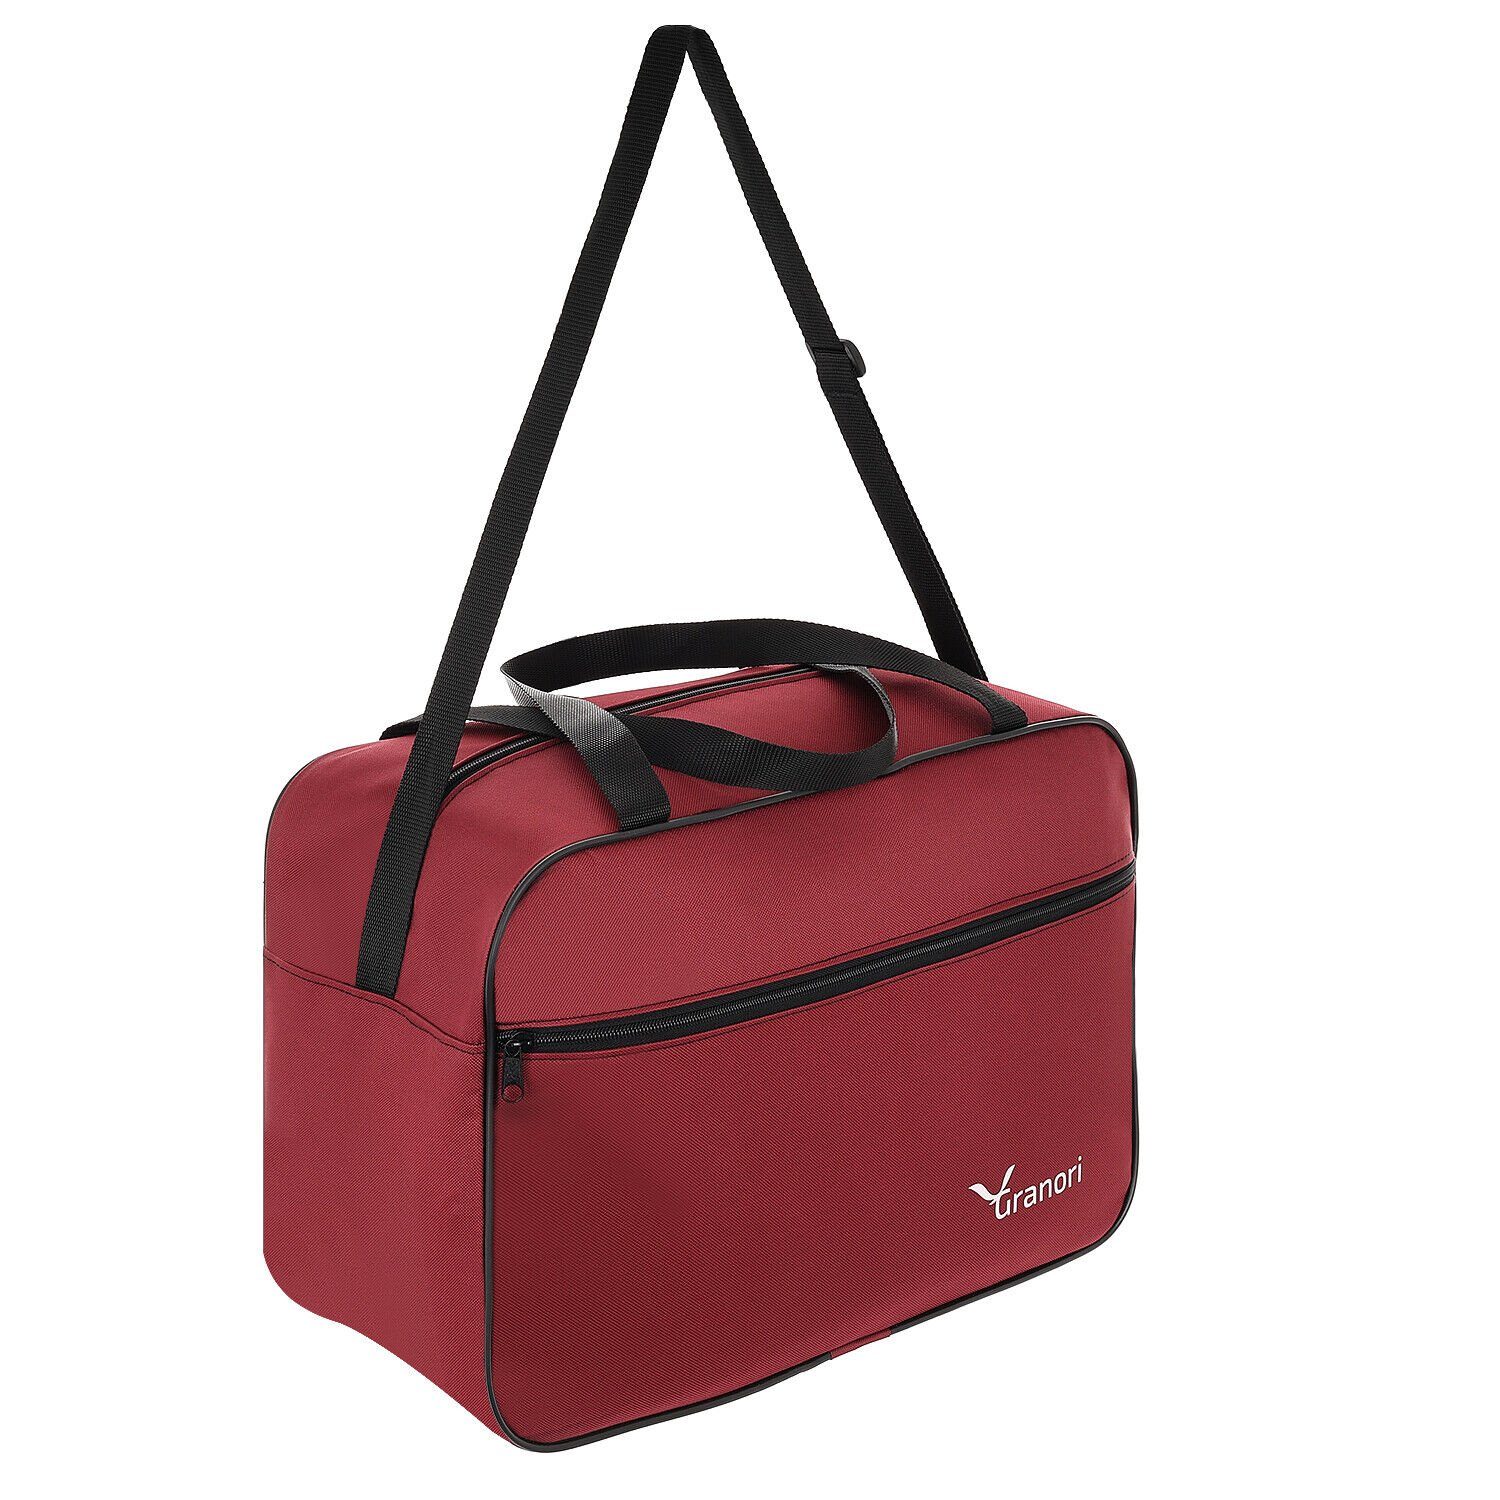 Granori Reisetasche 40x30x20 Aufsteckfunktion, 24 und cm geräumigem Flugzeug l Hauptfach Schultergurt Rot leichtes platzsparend, mit verstellbarem mit Handgepäck